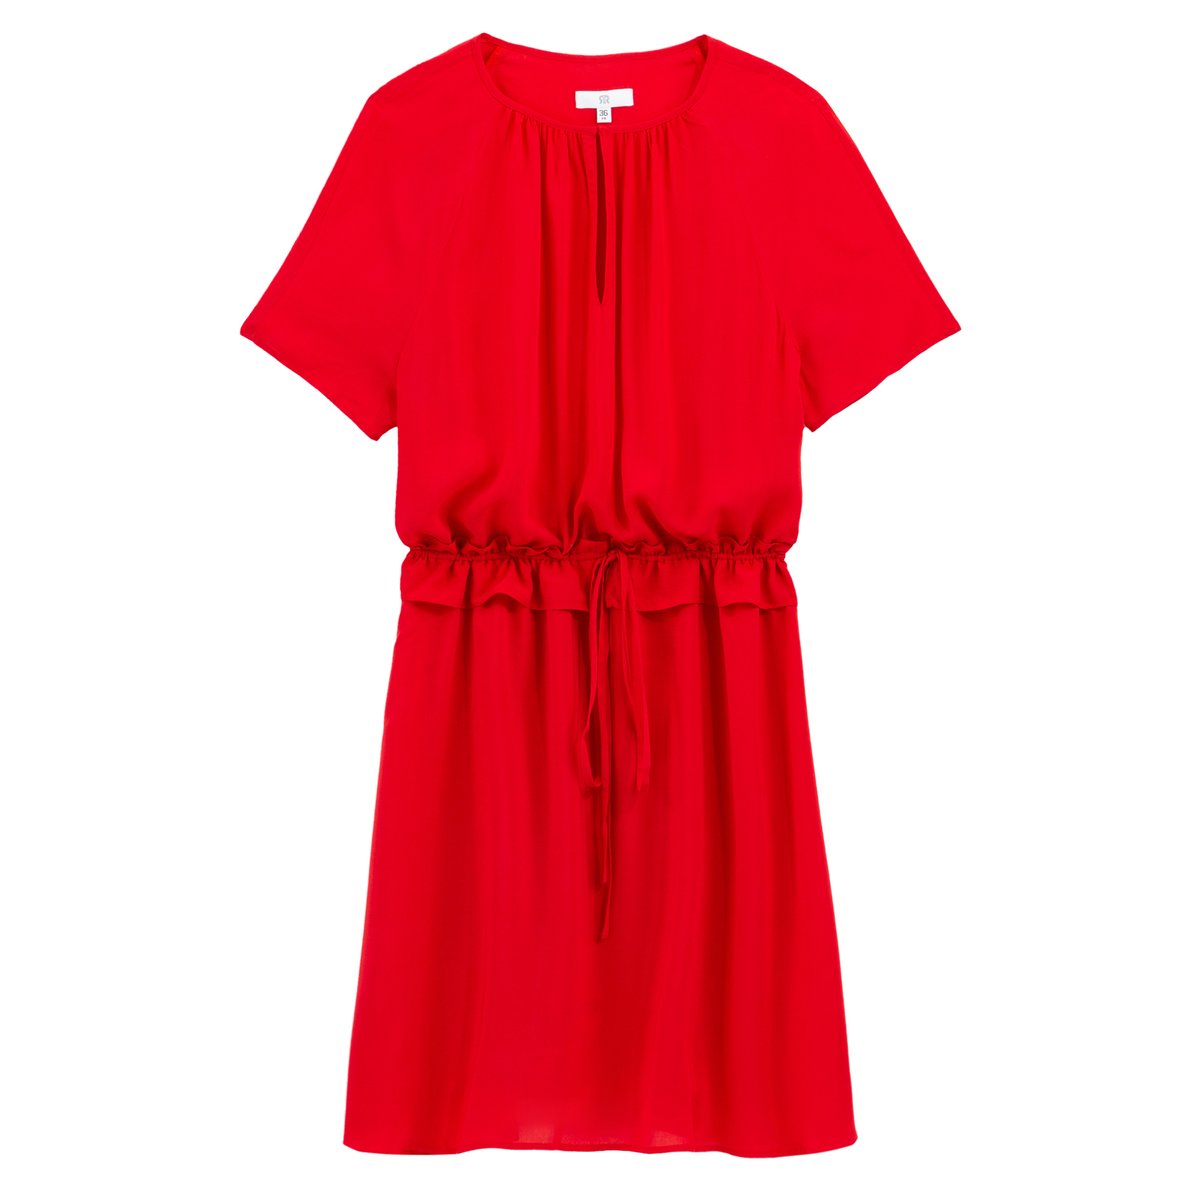 Платье La Redoute С коротким рукавом 42 (FR) - 48 (RUS) красный, размер 42 (FR) - 48 (RUS) С коротким рукавом 42 (FR) - 48 (RUS) красный - фото 5